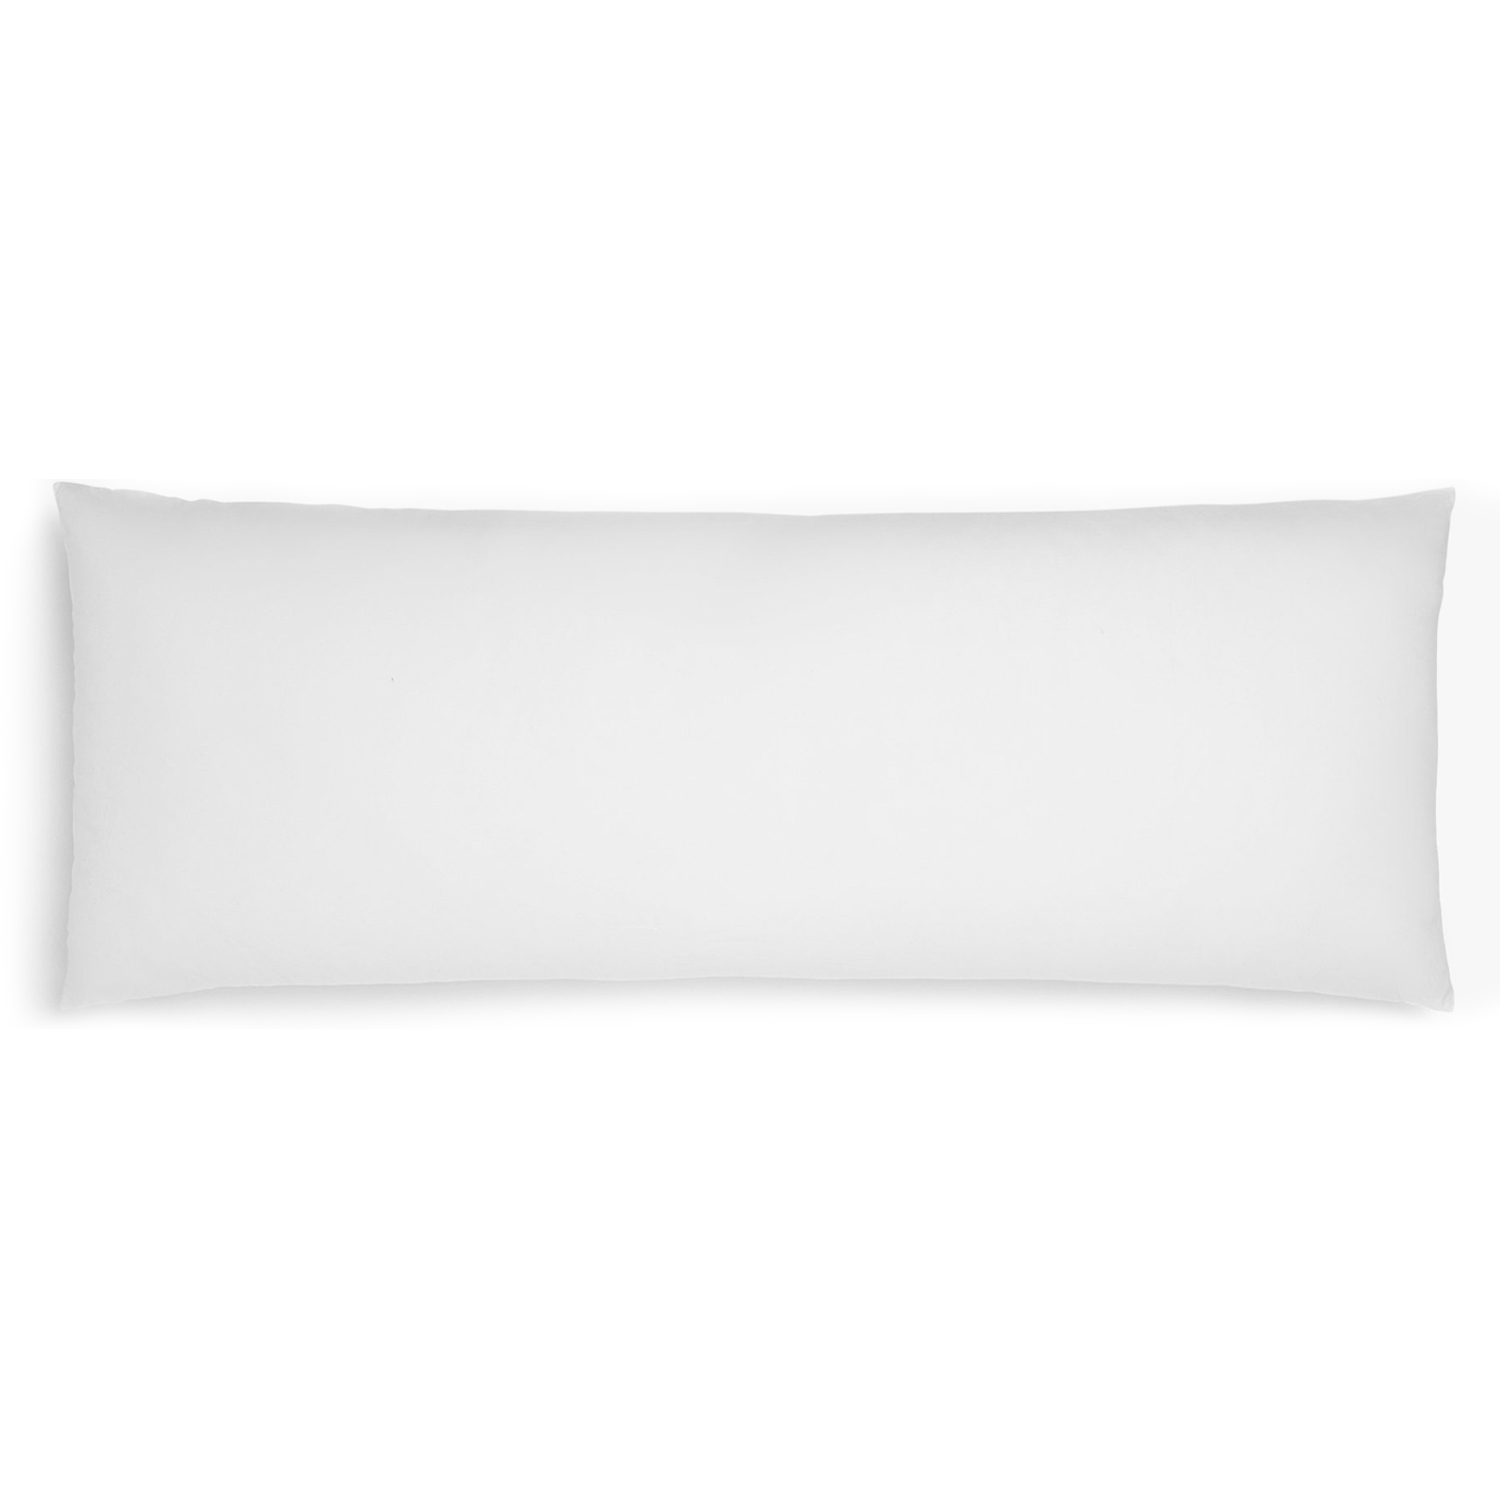 White body pillow, 20"x42"